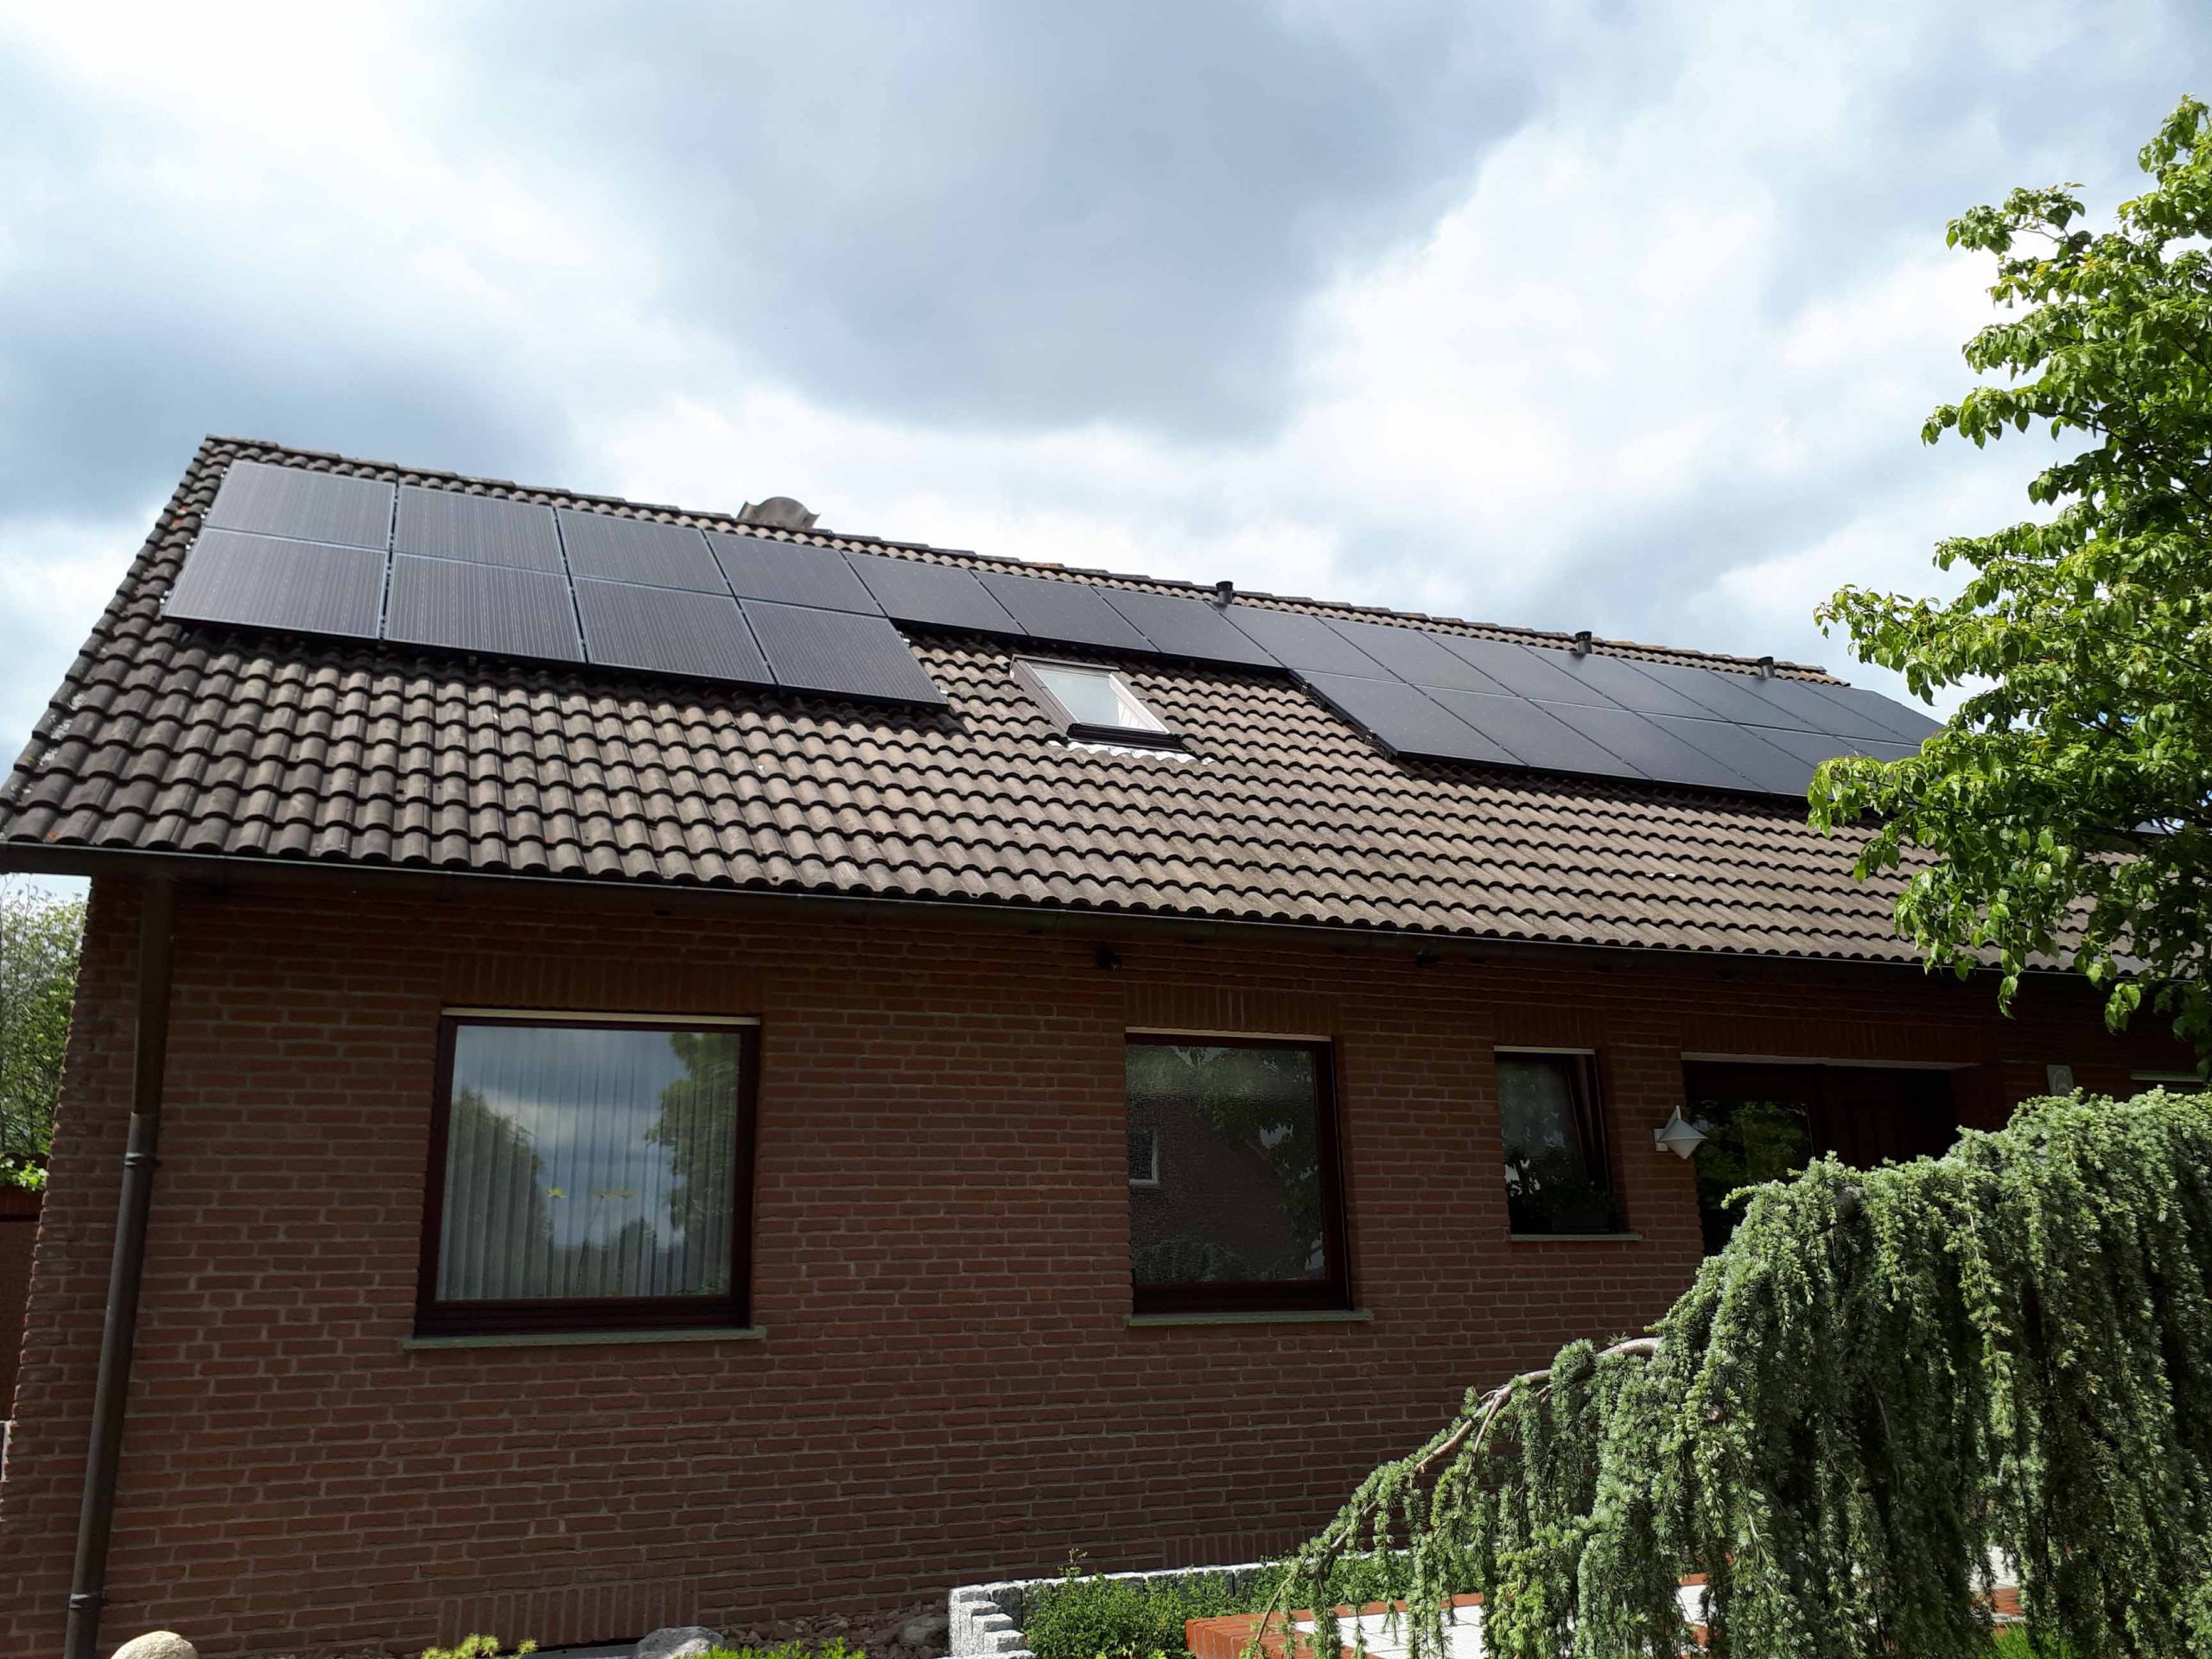 Henke Dachdecker | Zimmerei | Solartechnik - Photovoltaik - Anlage 7,88 kWp in Stadthagen (Landkreis Schaumburg-Lippe)